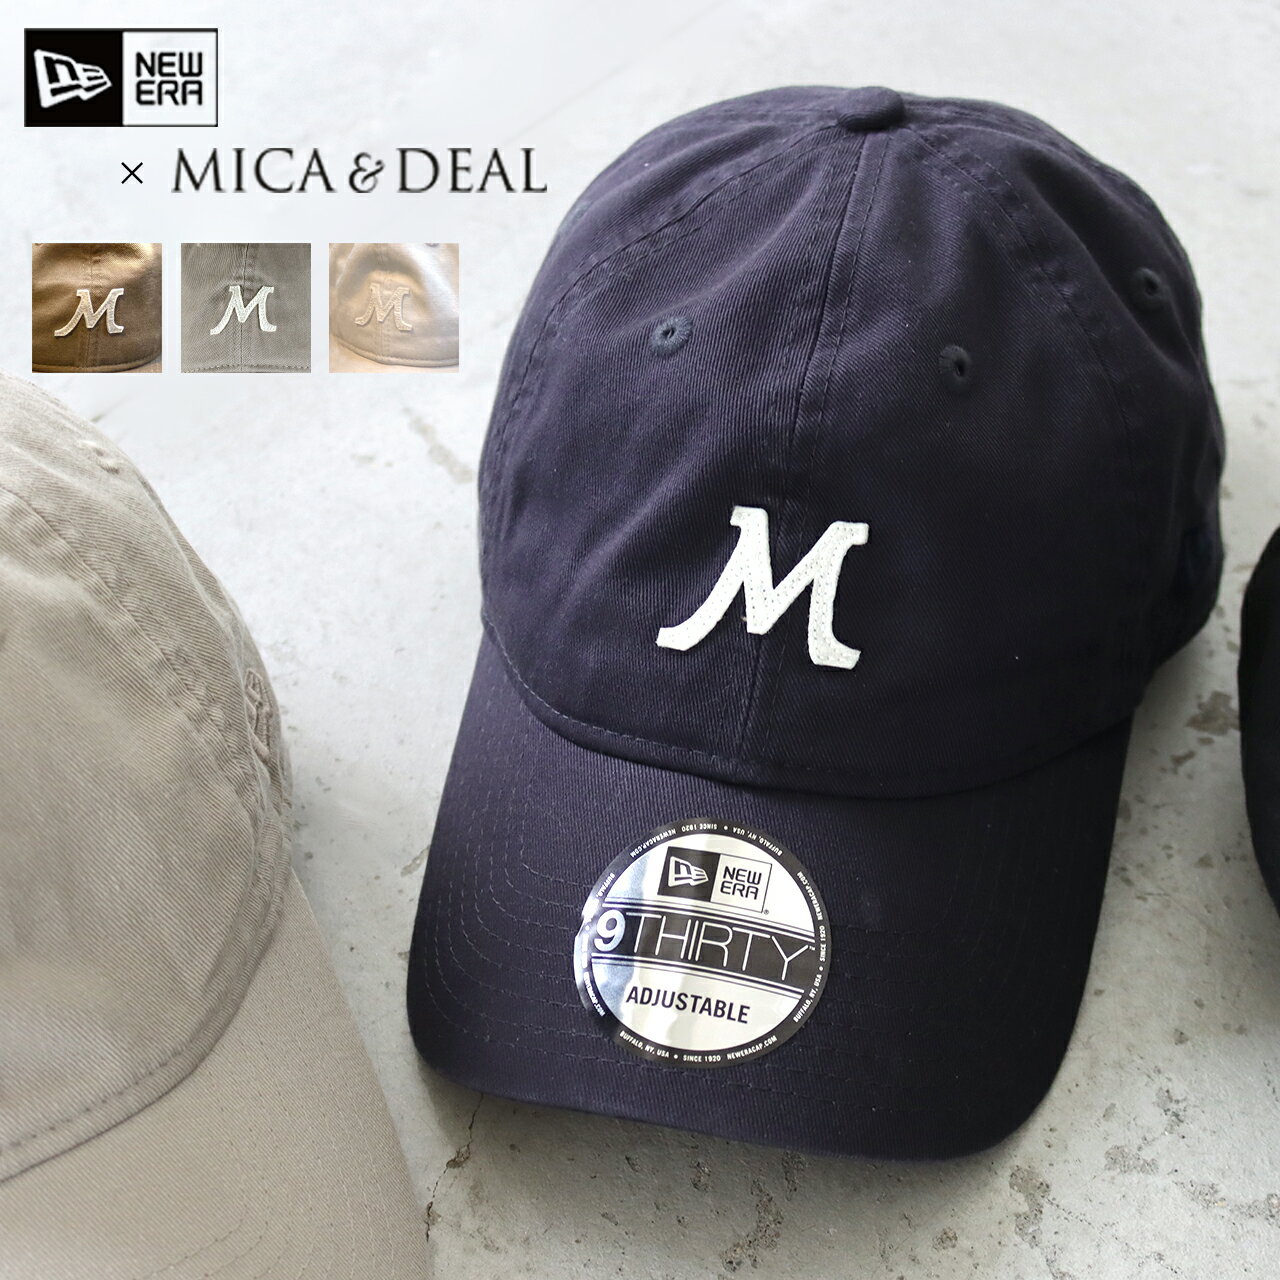 ニューエラ MICA&DEAL【NEW ERA×MICA&DEAL】 コラボレーション M CAP 帽子 キャップ CAP キャップ ニューエラ 送料無料 日よけ UV対策 ギフト プレゼント 公式 正規品 24SS 目玉商品 mica&deal(マイカアンドディール)